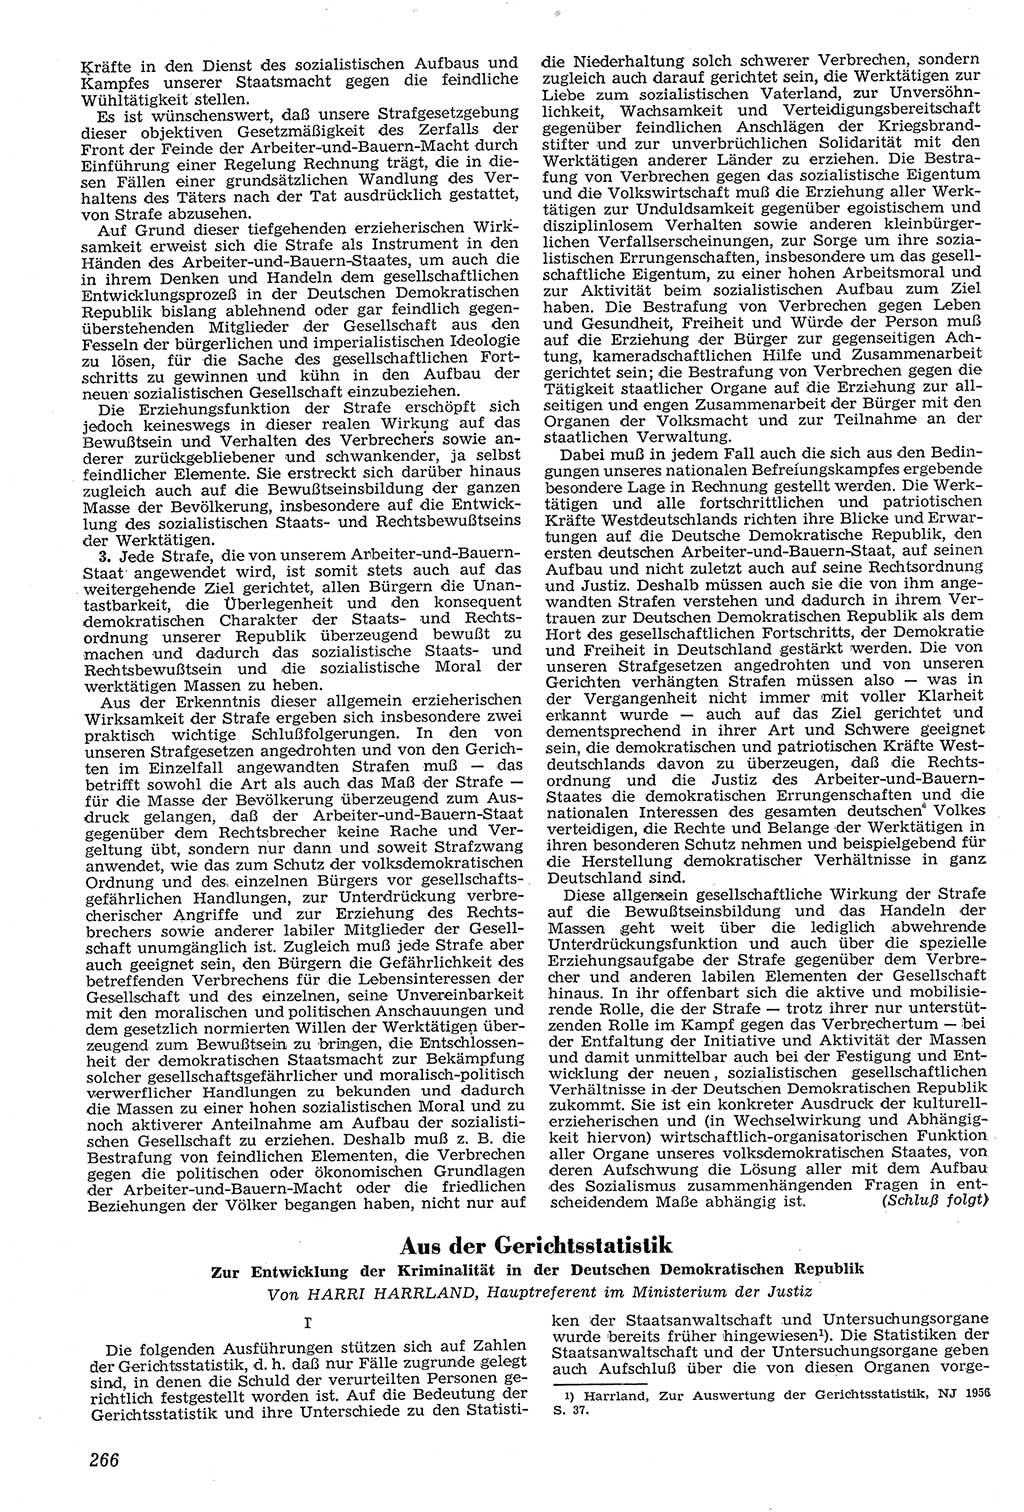 Neue Justiz (NJ), Zeitschrift für Recht und Rechtswissenschaft [Deutsche Demokratische Republik (DDR)], 11. Jahrgang 1957, Seite 266 (NJ DDR 1957, S. 266)